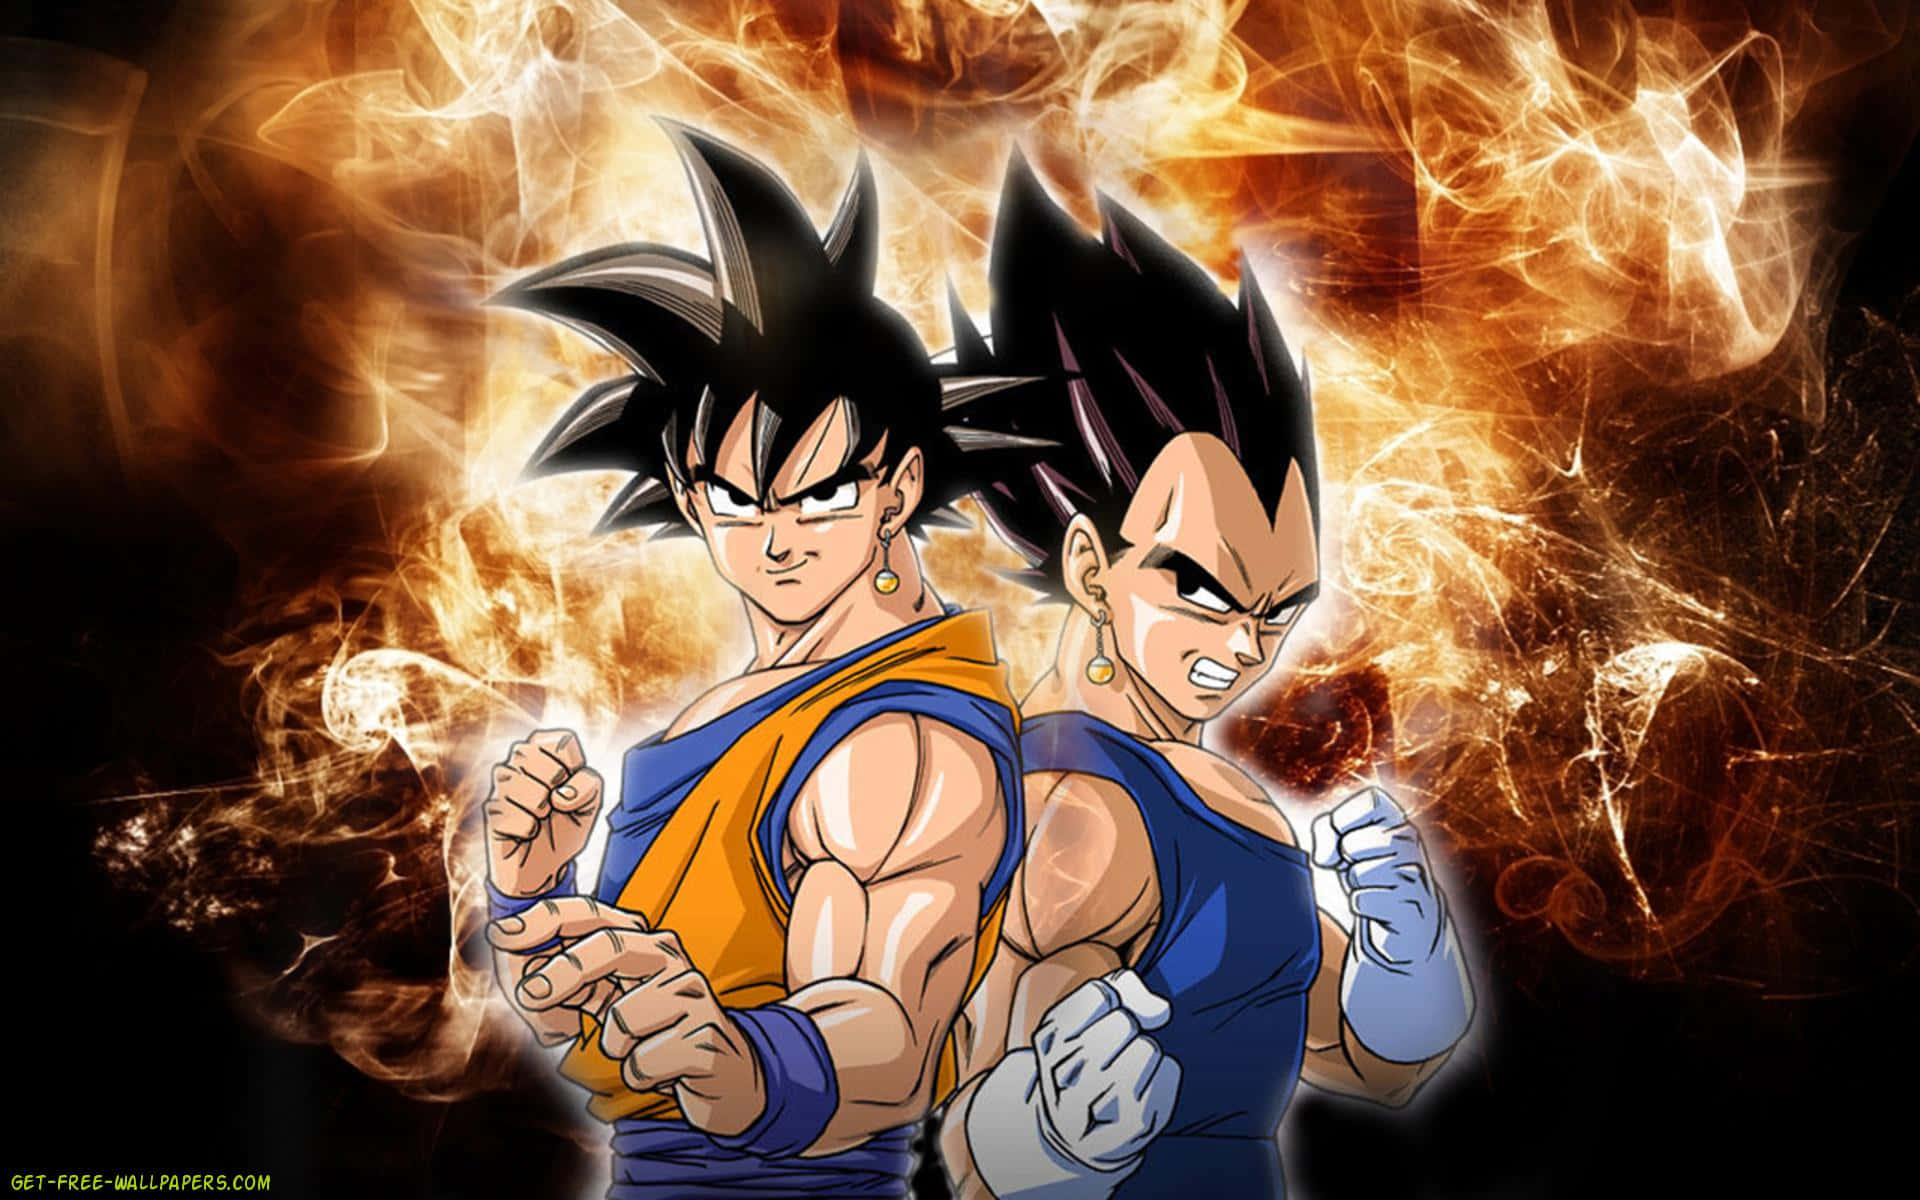 Goku&Vegeta power up to unlock untold power Wallpaper